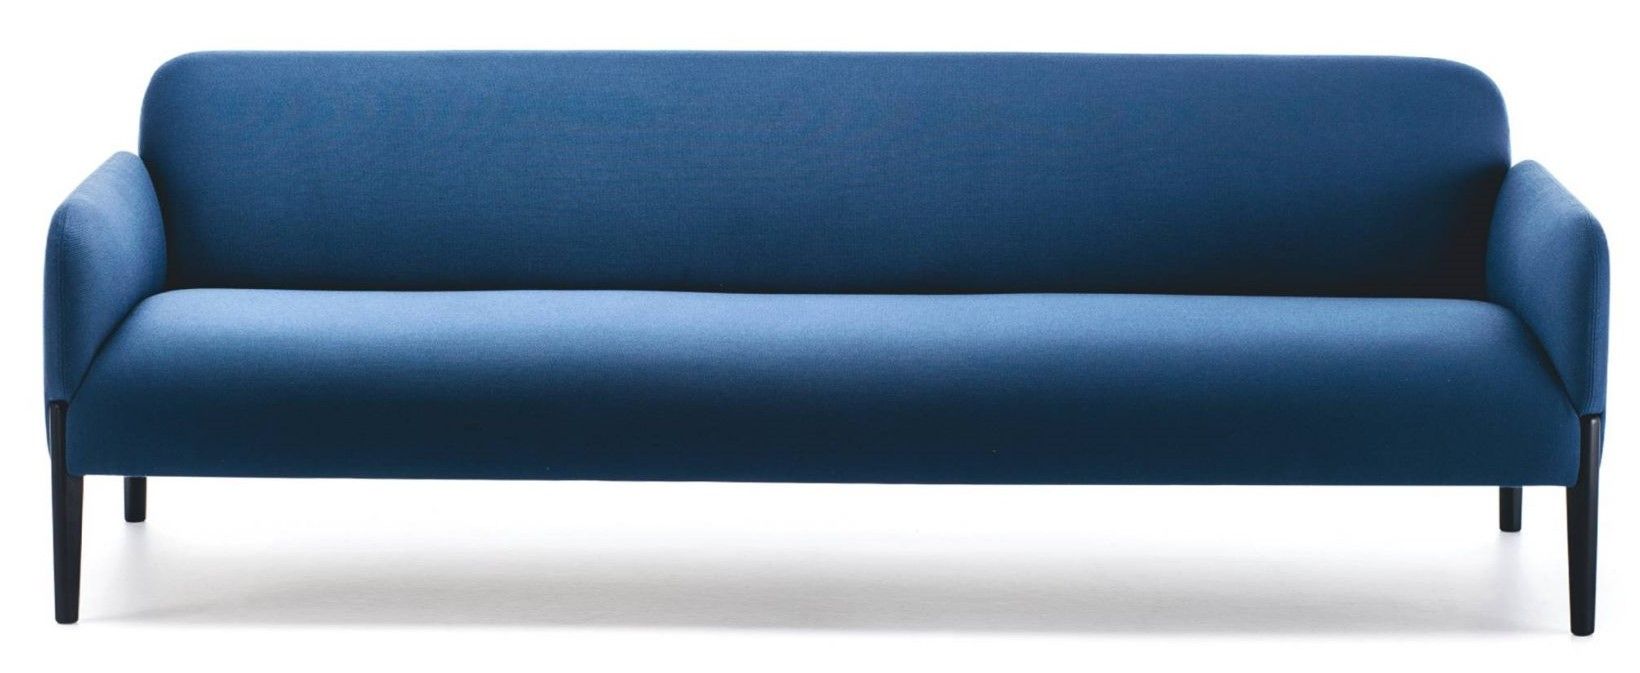 LaCividina - Trojmístná sedačka JOIN, 220 cm - 